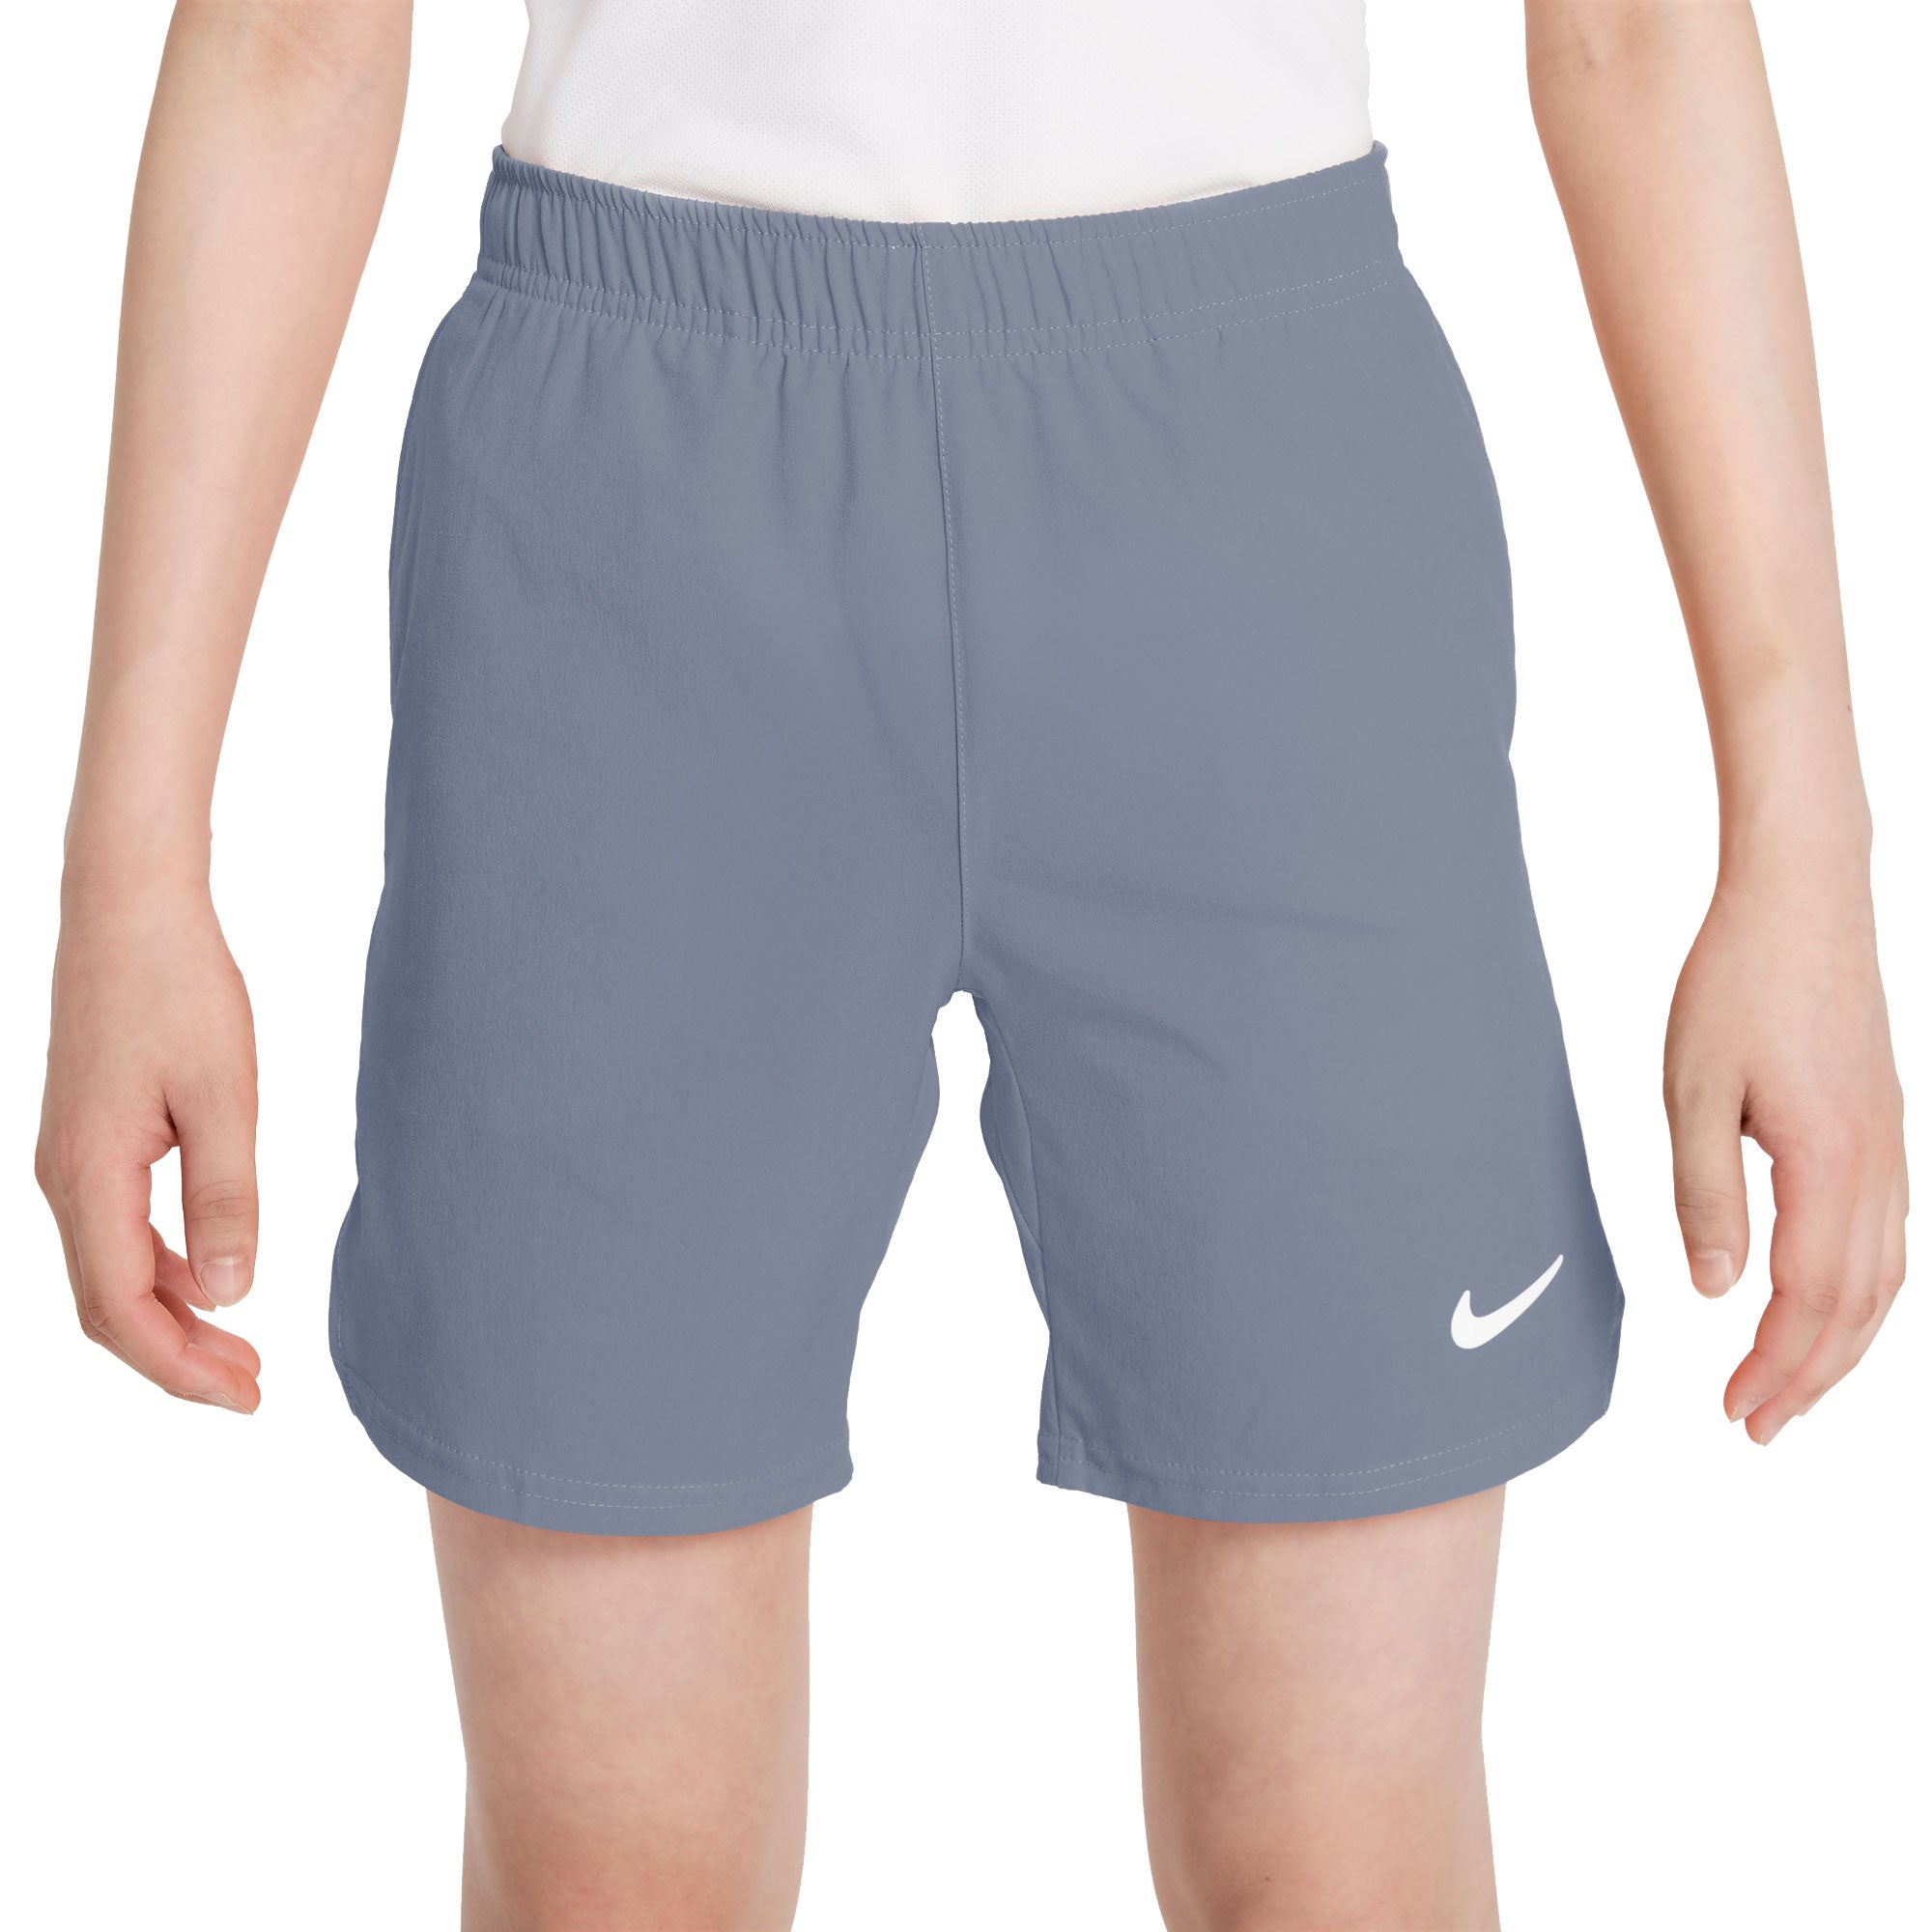 NikeCourt Flex Ace Men's Tennis Shorts